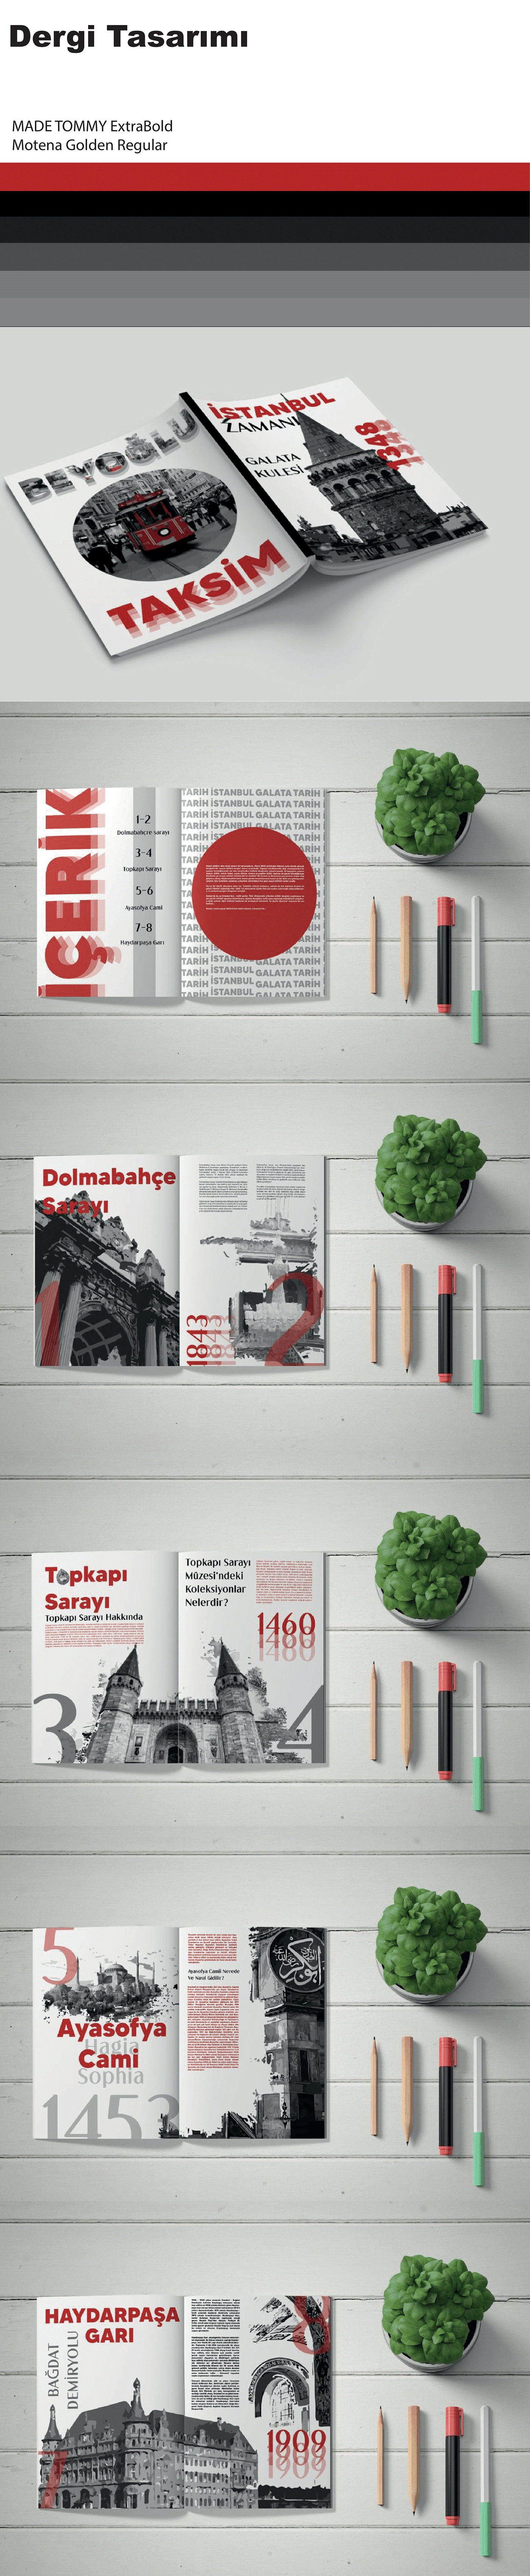 Dergi dergi tasarımı istanbul tipografi tarih